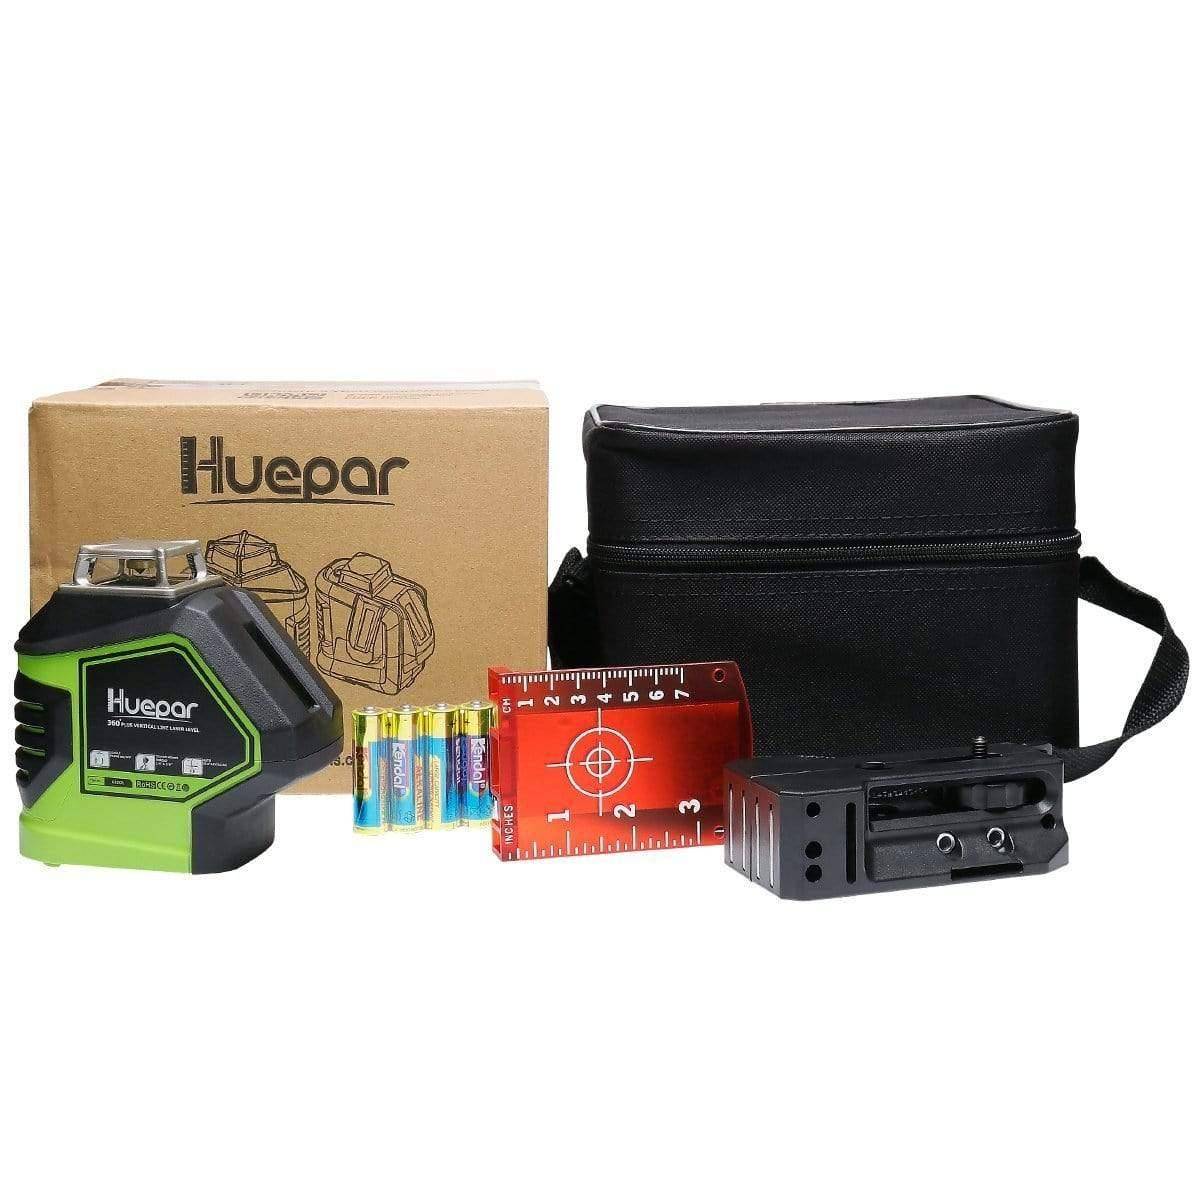 Huepar 621CR - Self-Leveling Laser Level Red Cross Line with 2 Plumb Dots Laser Tool - HUEPAR UK